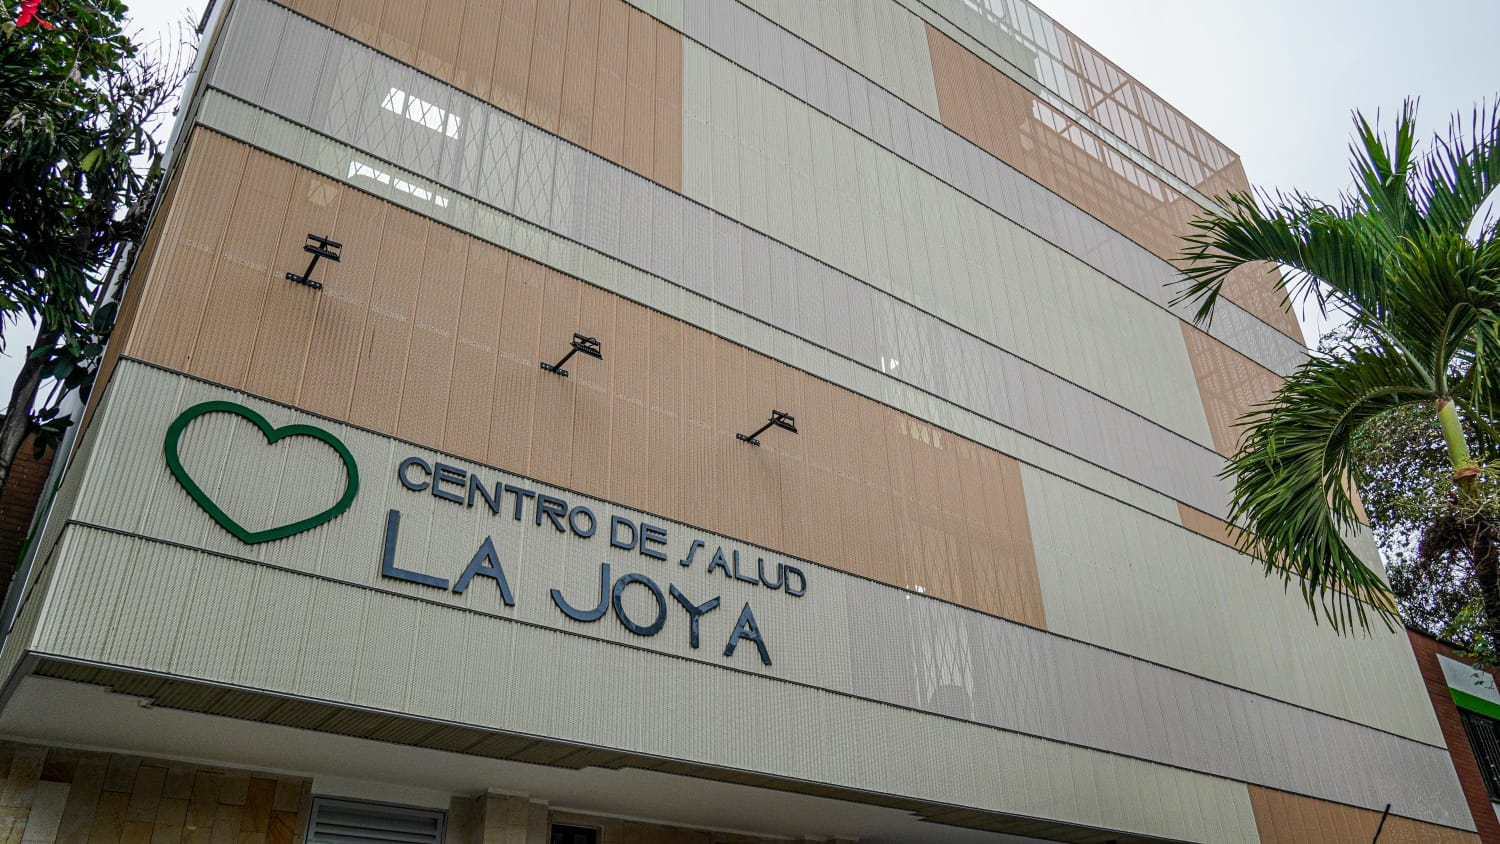 Centro de Salud La Joya